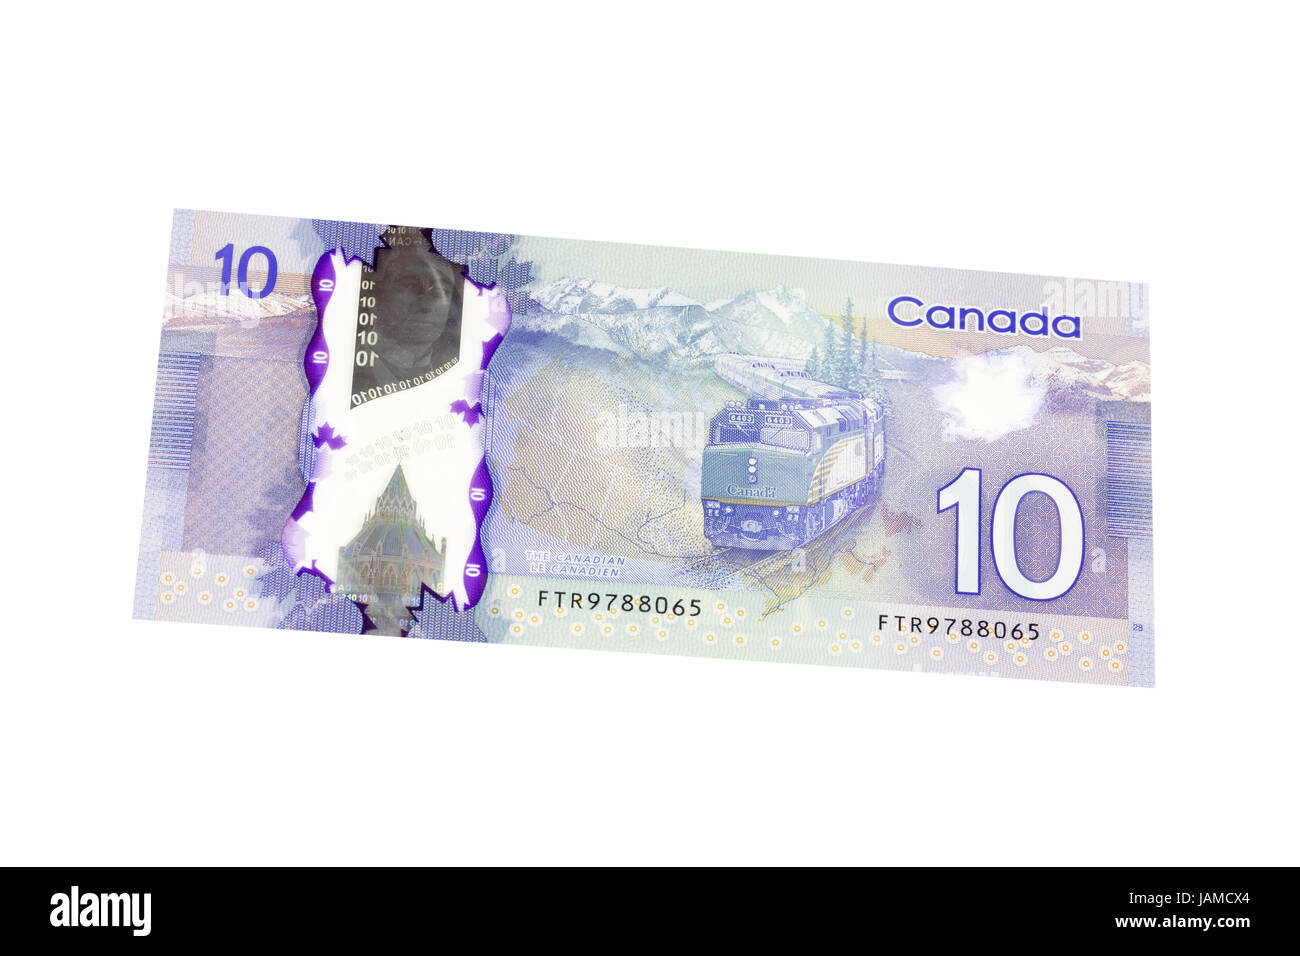 Billet de 10 dollars canadiens sur un fond blanc Banque D'Images